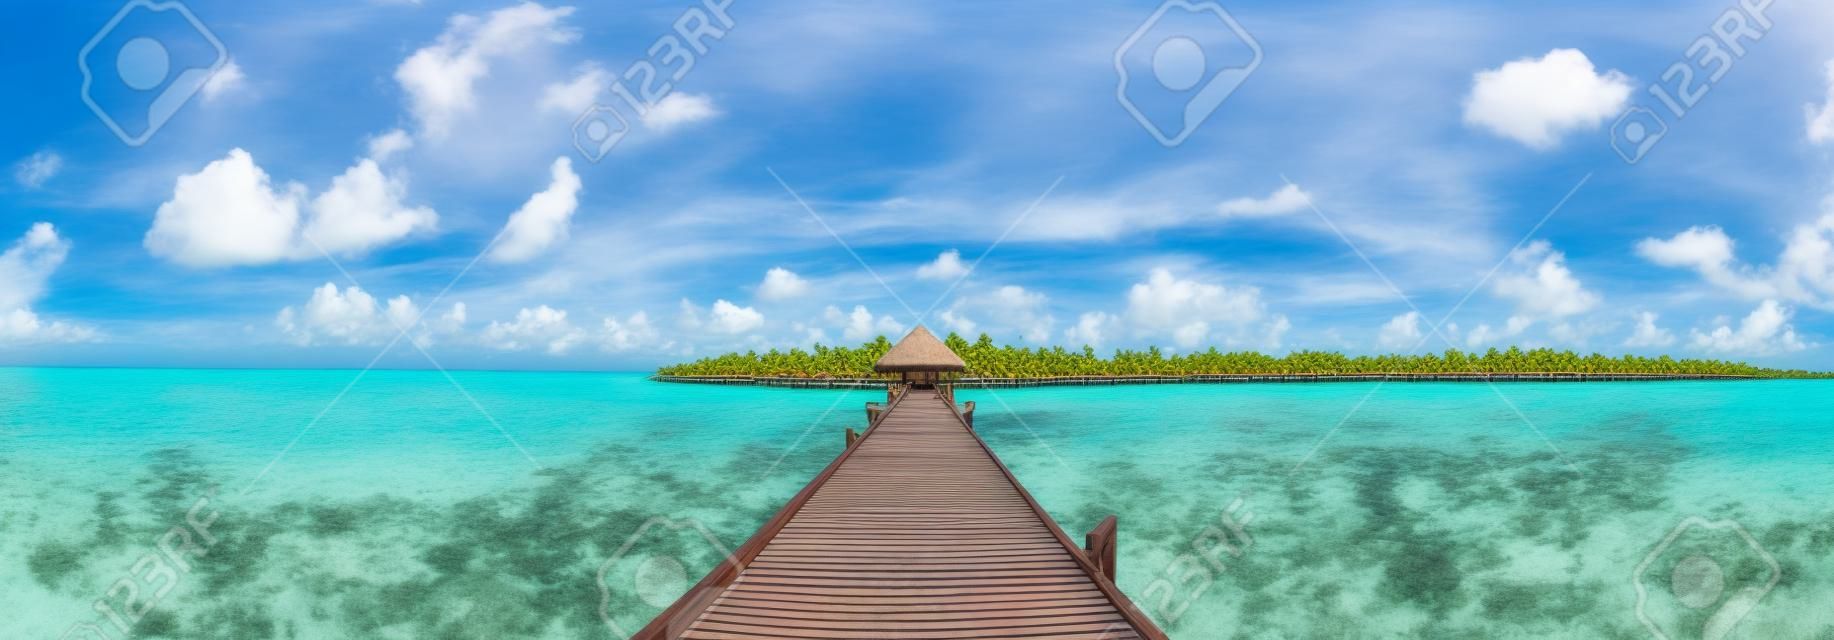 Panorama der Wasservillen (Bungalows) und der Holzbrücke am tropischen Strand auf den Malediven am Sommertag